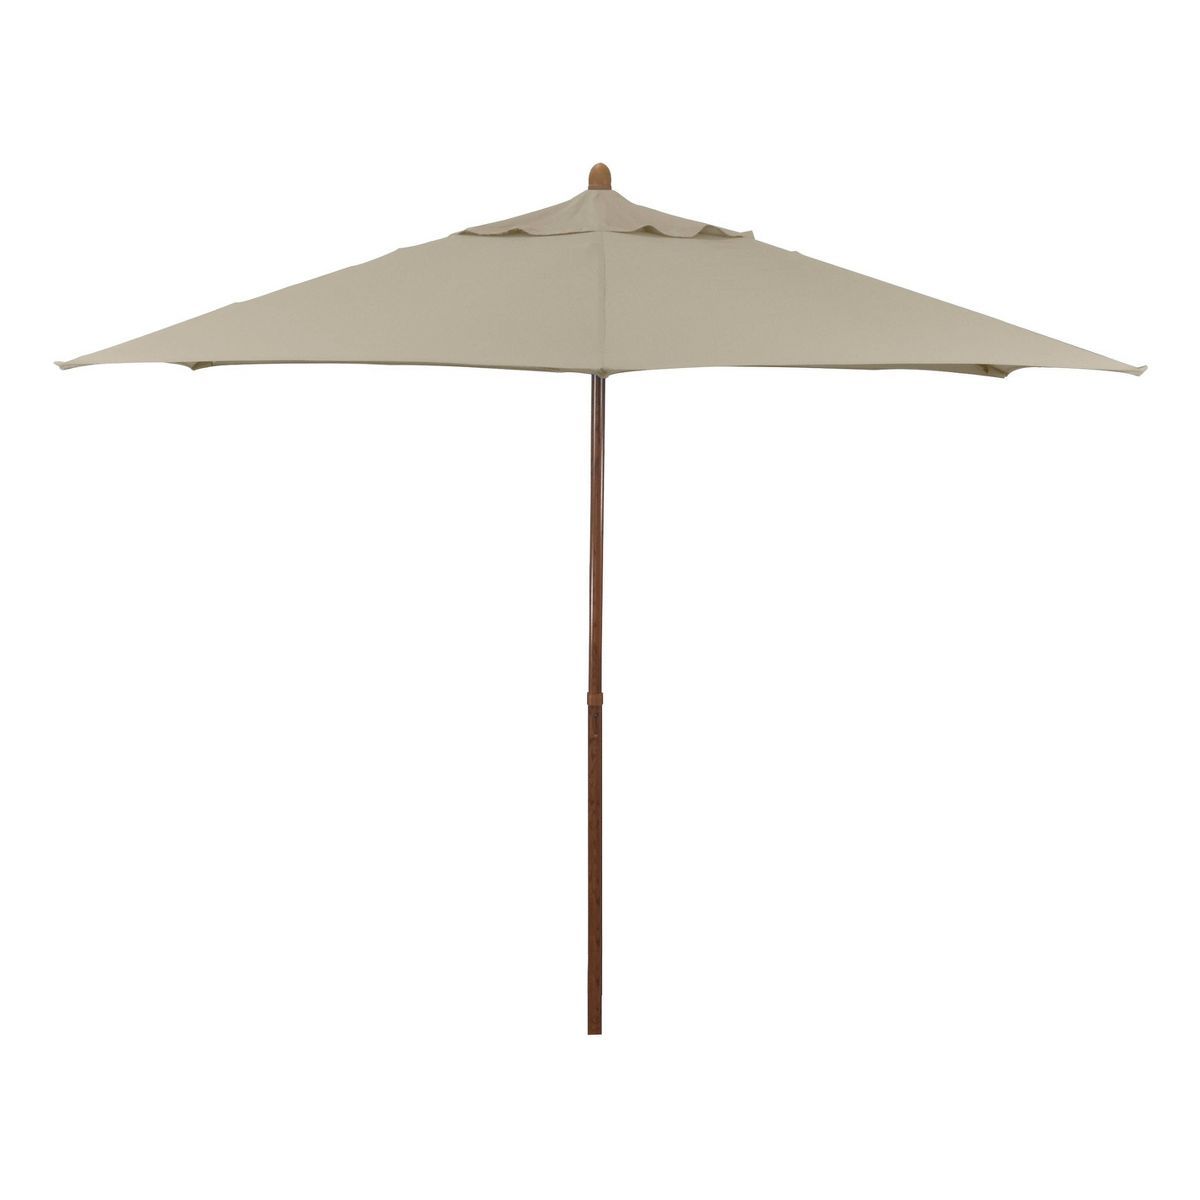 9' x 9' Round Wood Grain Steel Patio Umbrella  Antique Beige - Astella | Target